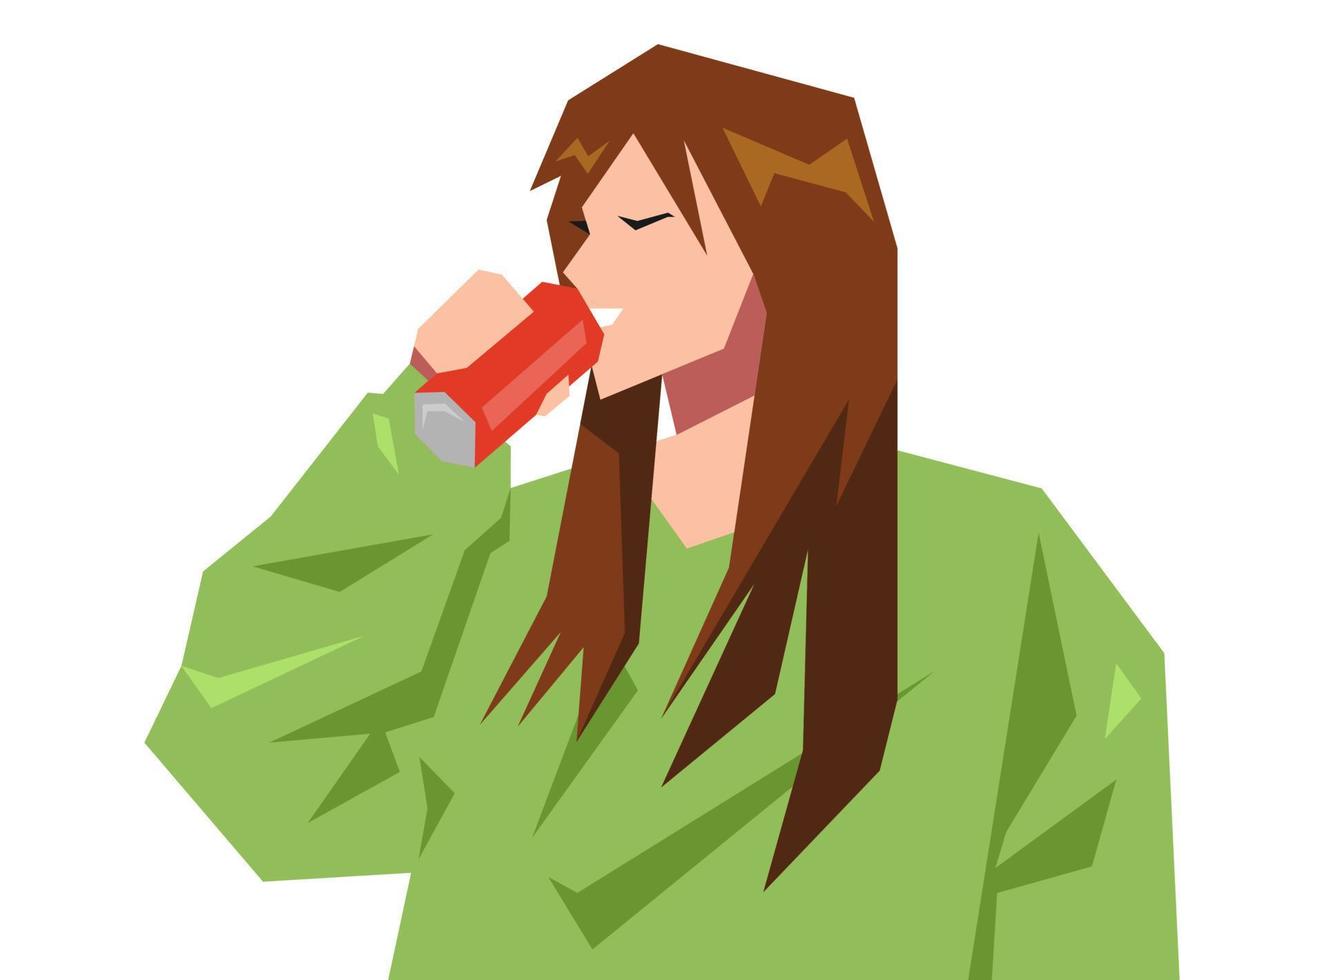 mooi jong meisje karakter is drinken in een kan. concept van drankje, dorst, Frisdrank, cocktail. vlak vector illustratie.